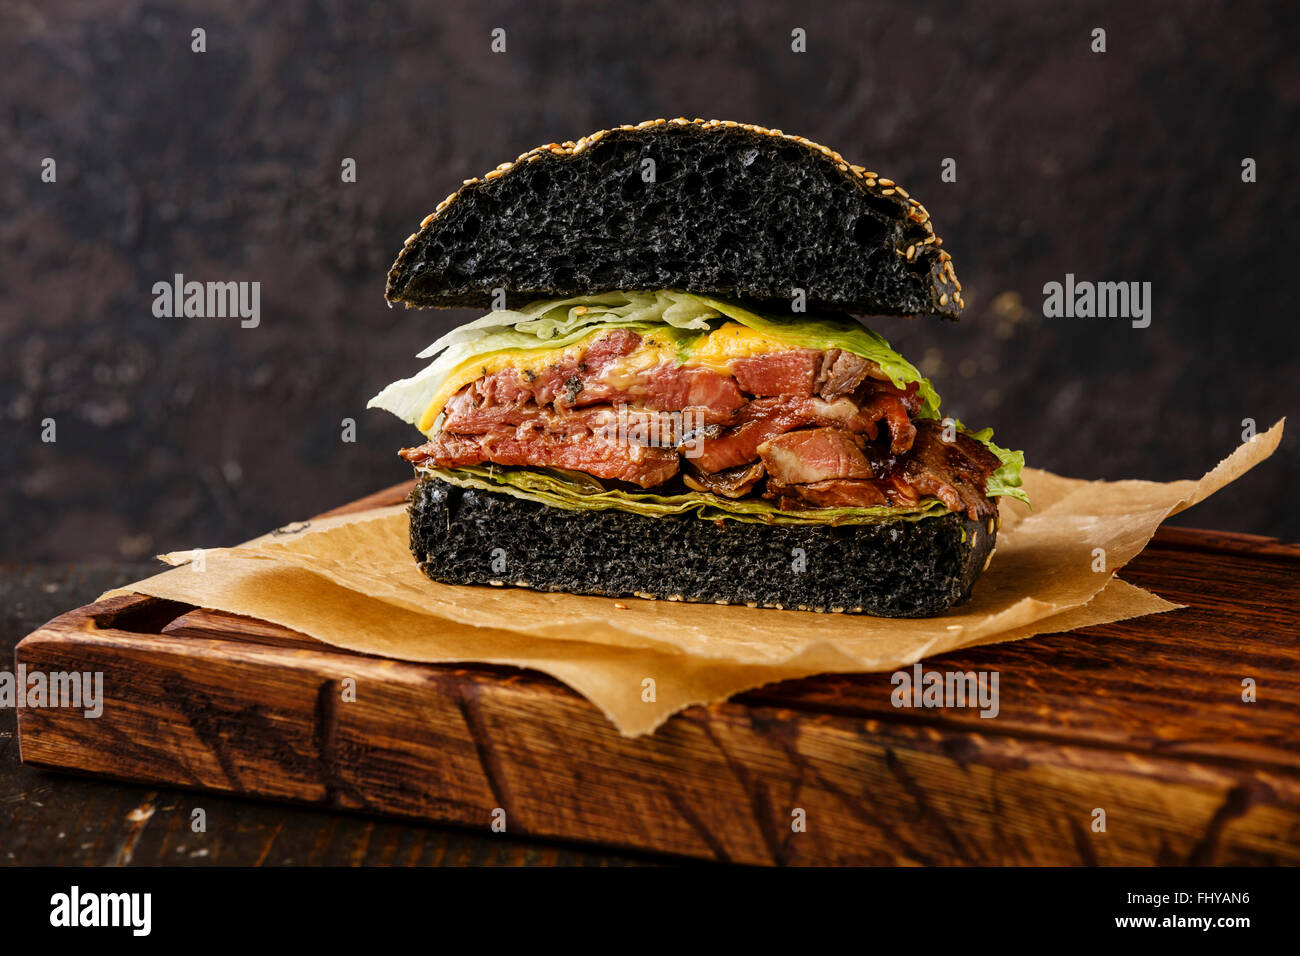 Rôti de bœuf coupé en deux avec des tranches de Pastrami Burger sur fond sombre Banque D'Images